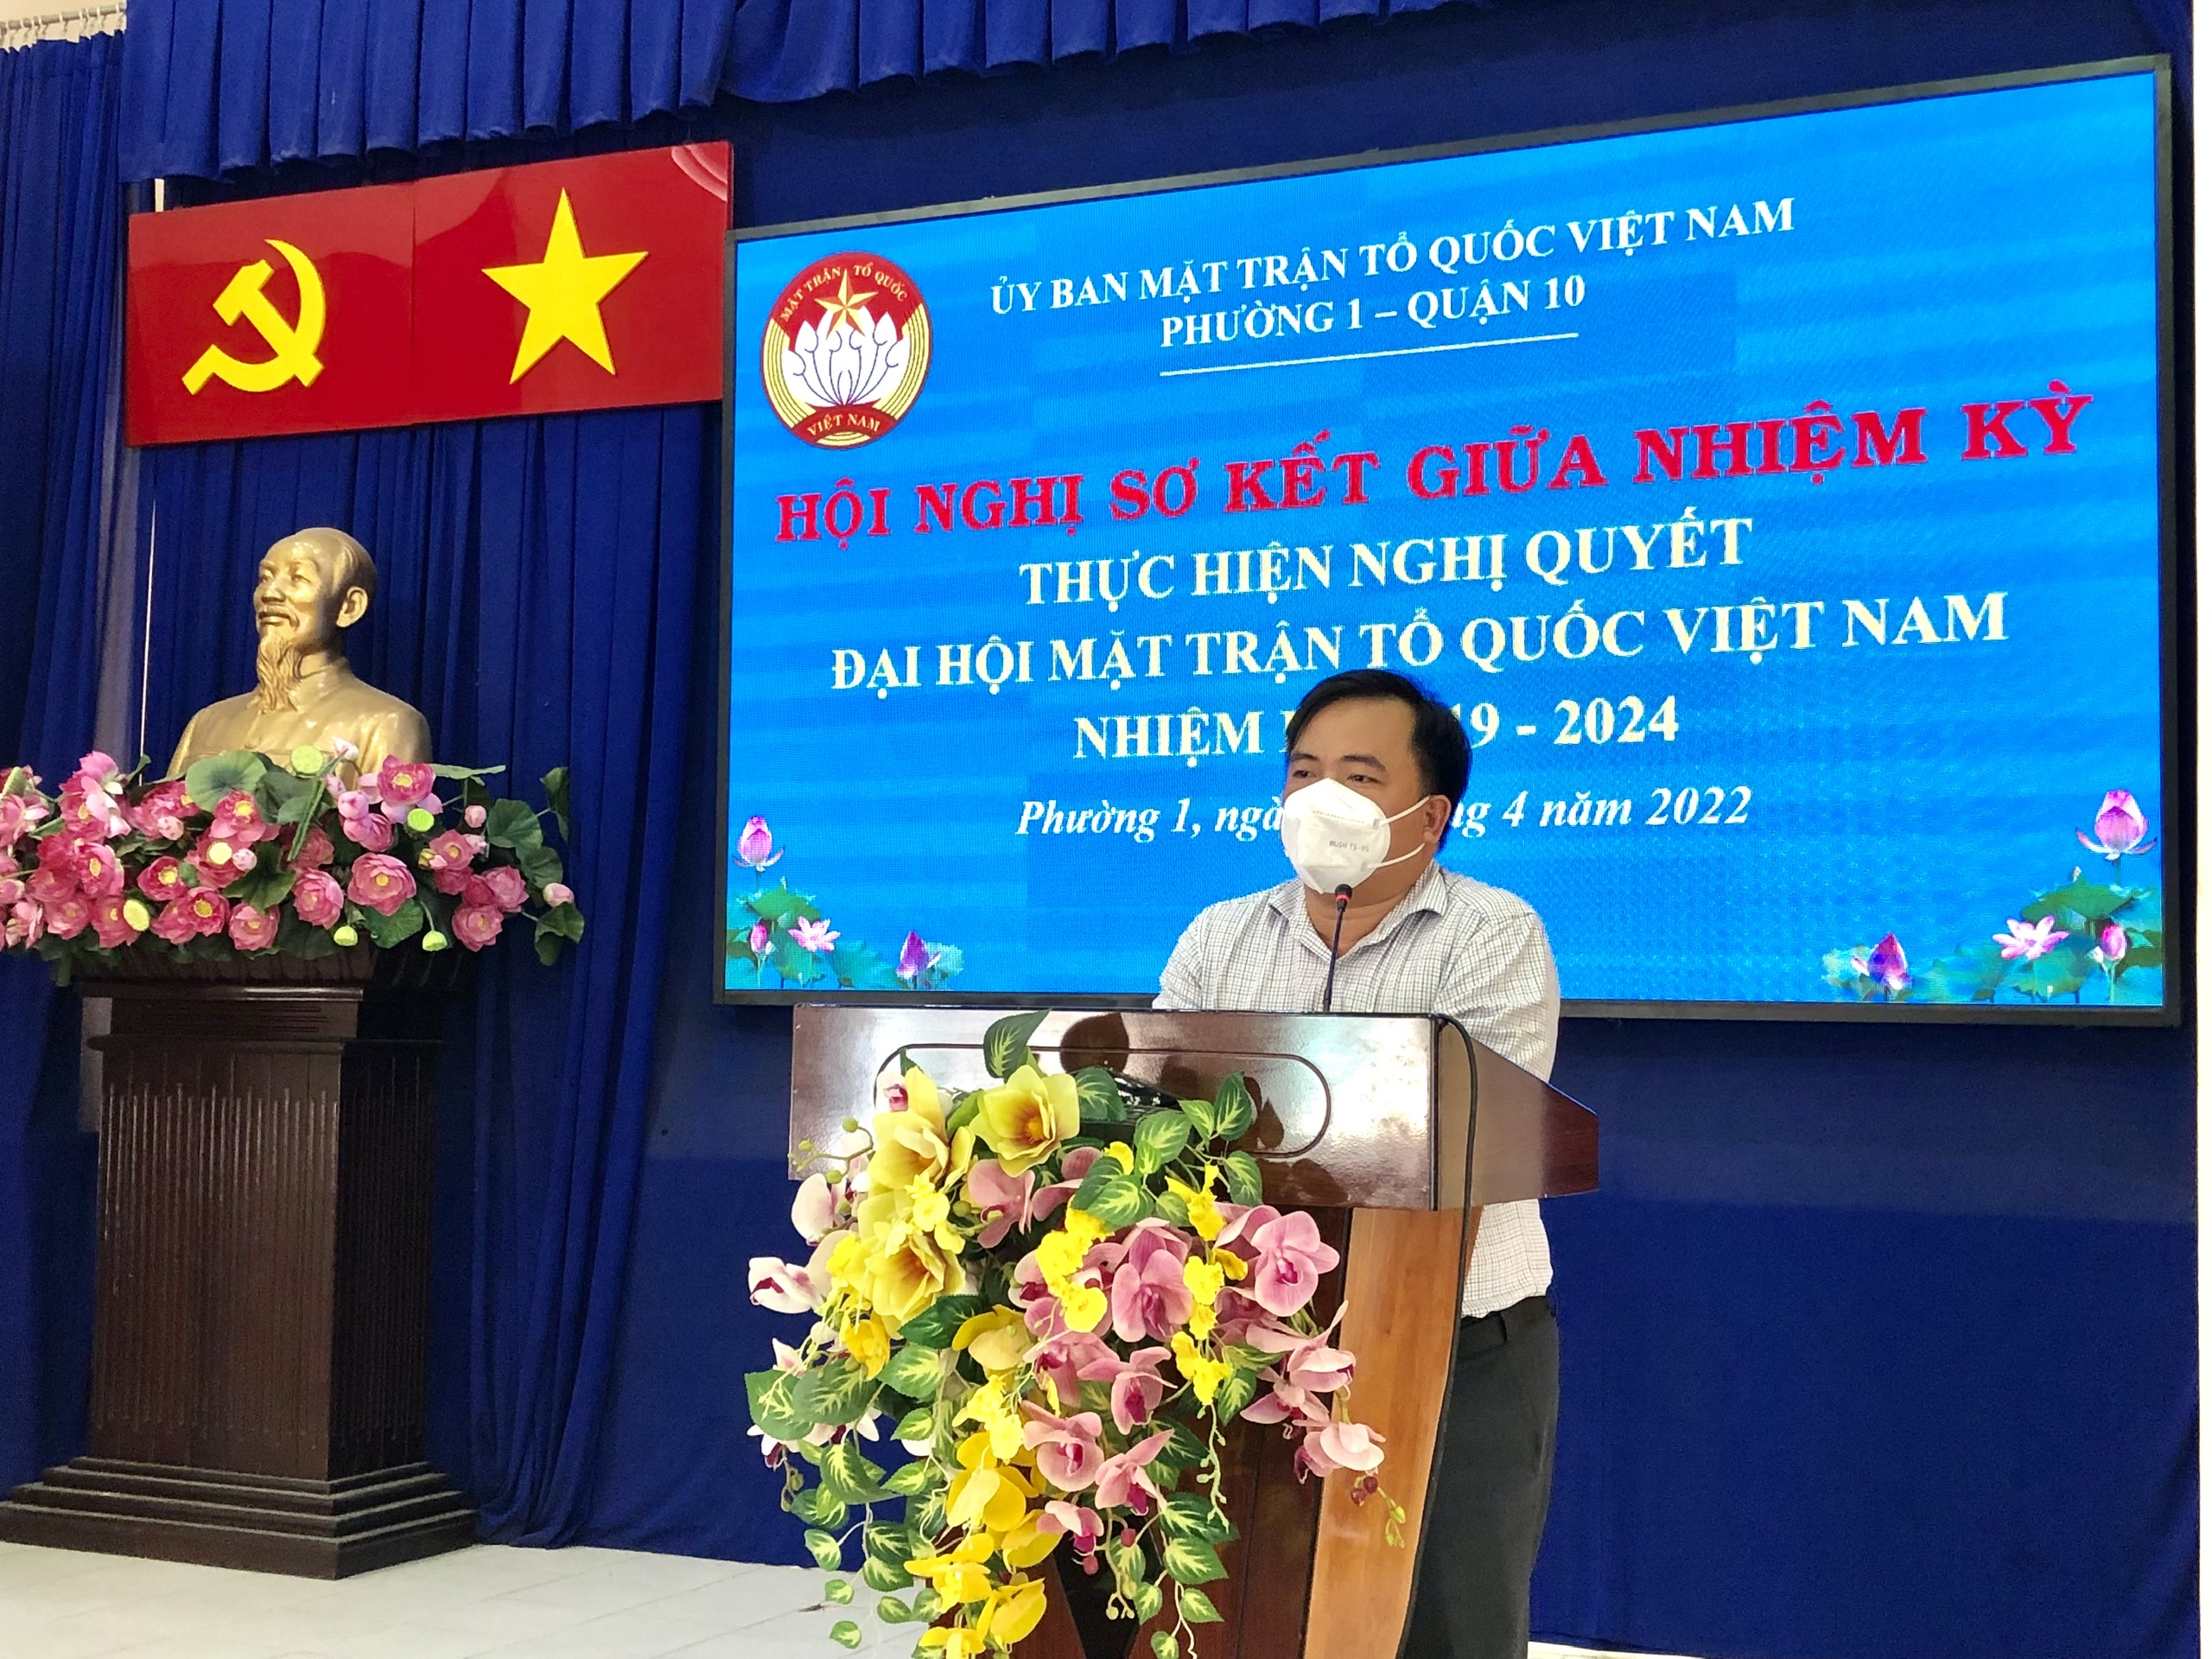 Image: Ngày 05/4/2022 Ủy ban Mặt trận Tổ quốc Việt Nam Phường 1 tổ chức hội nghị sơ kết giữa nhiệm kỳ.